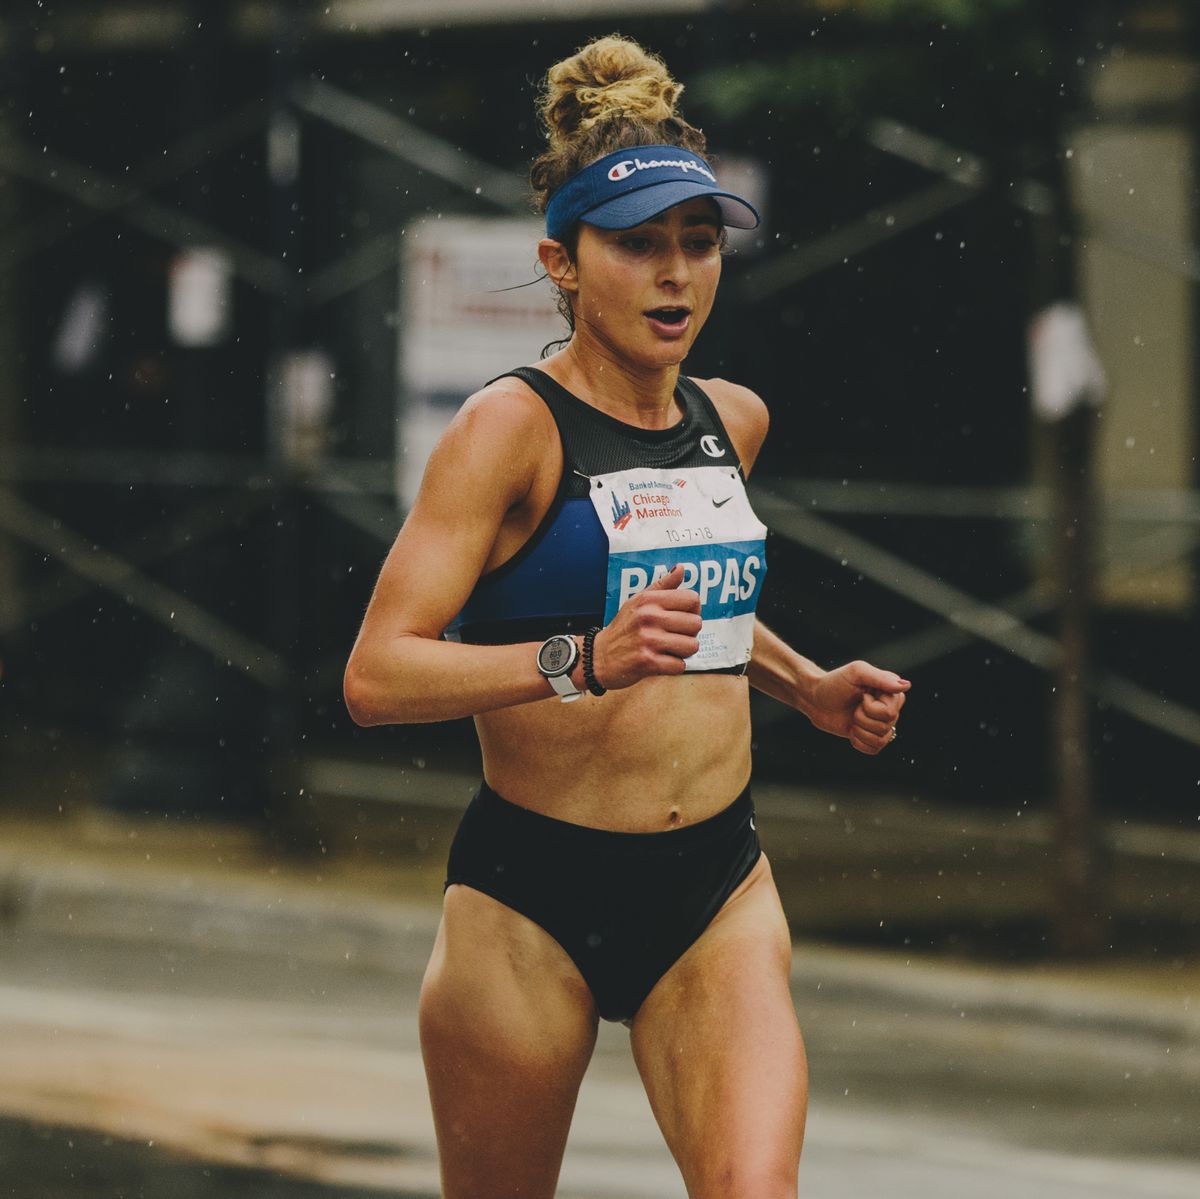 alexi pappas running the chicago marathon in 2018